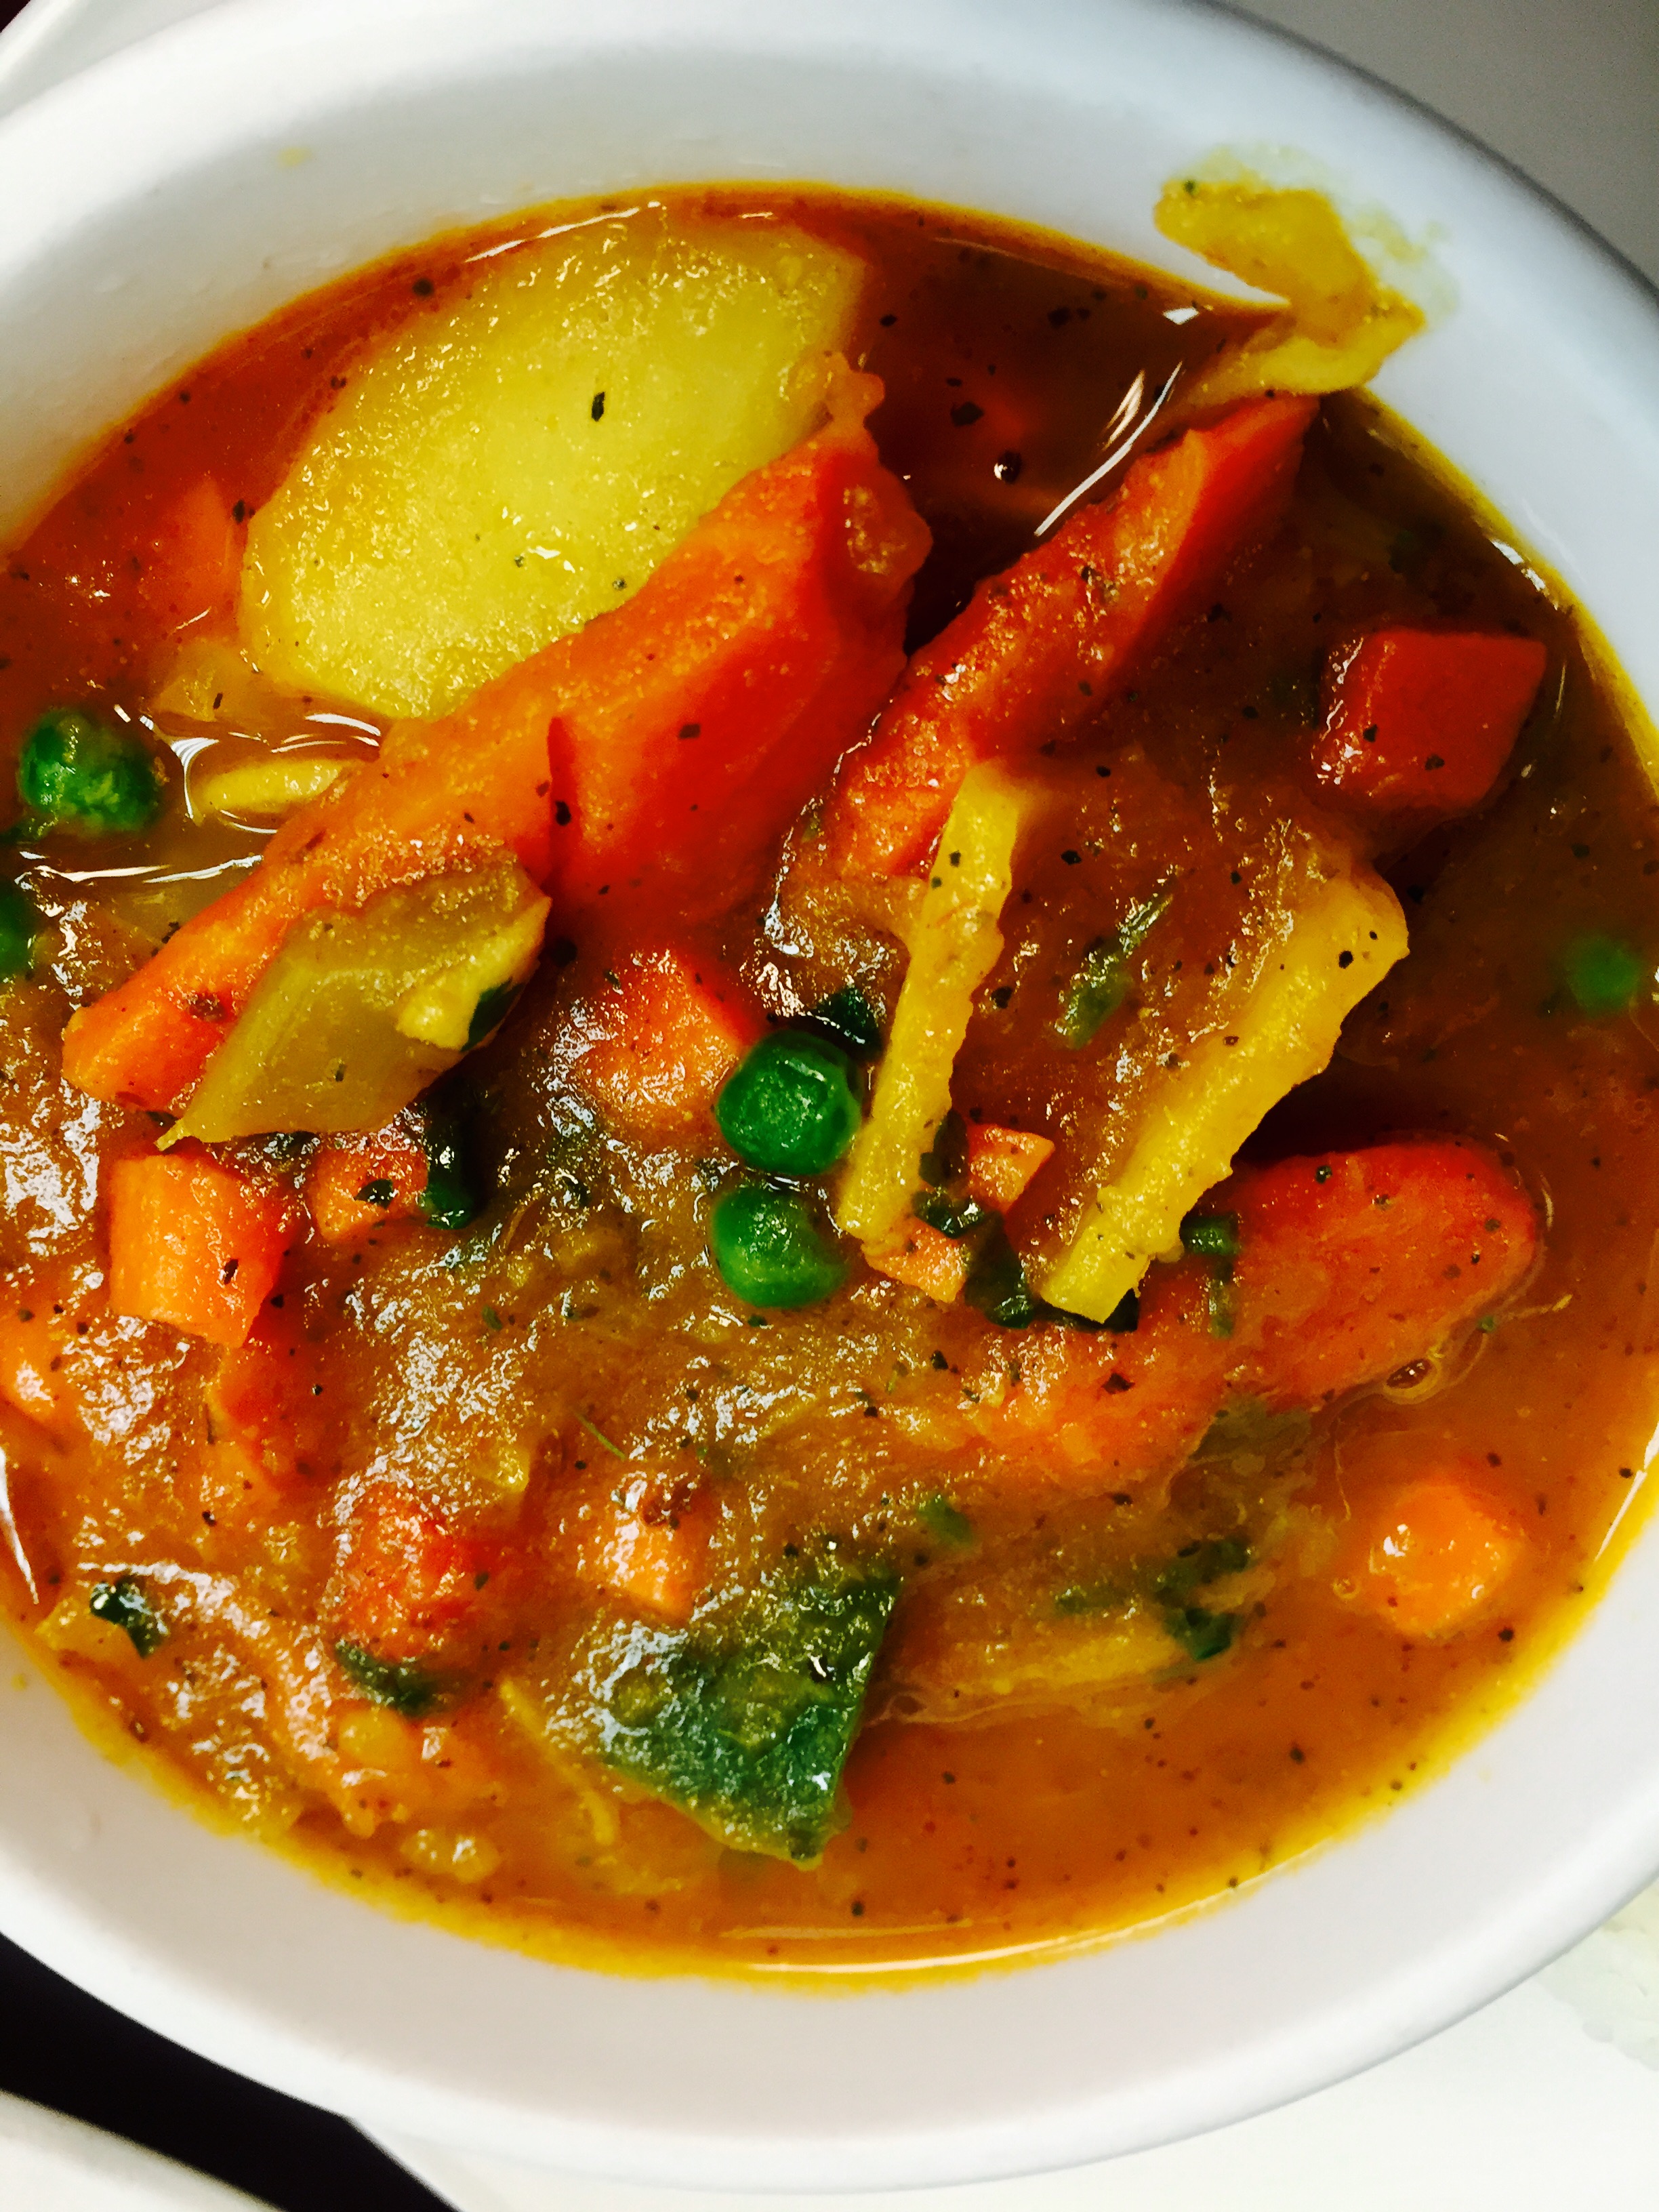 veg-curry